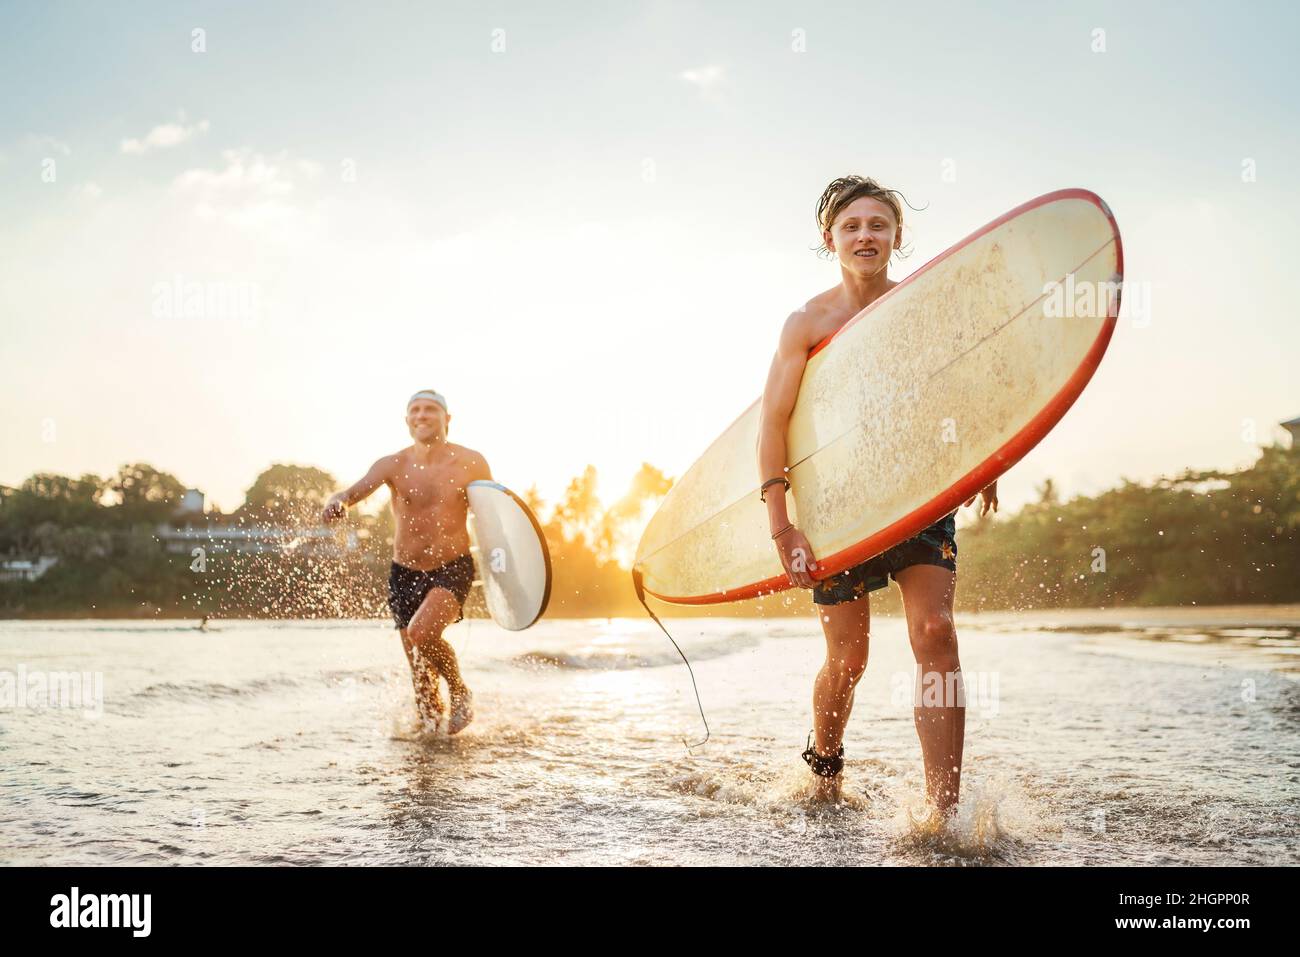 Junger Teenager mit einem Surfbrett, der nach dem Surfen mit seinem Vater am Sandstrand des Ozeans läuft. Sie lächeln und genießen ein wunderschönes Sonnenuntergangslicht. Fa Stockfoto